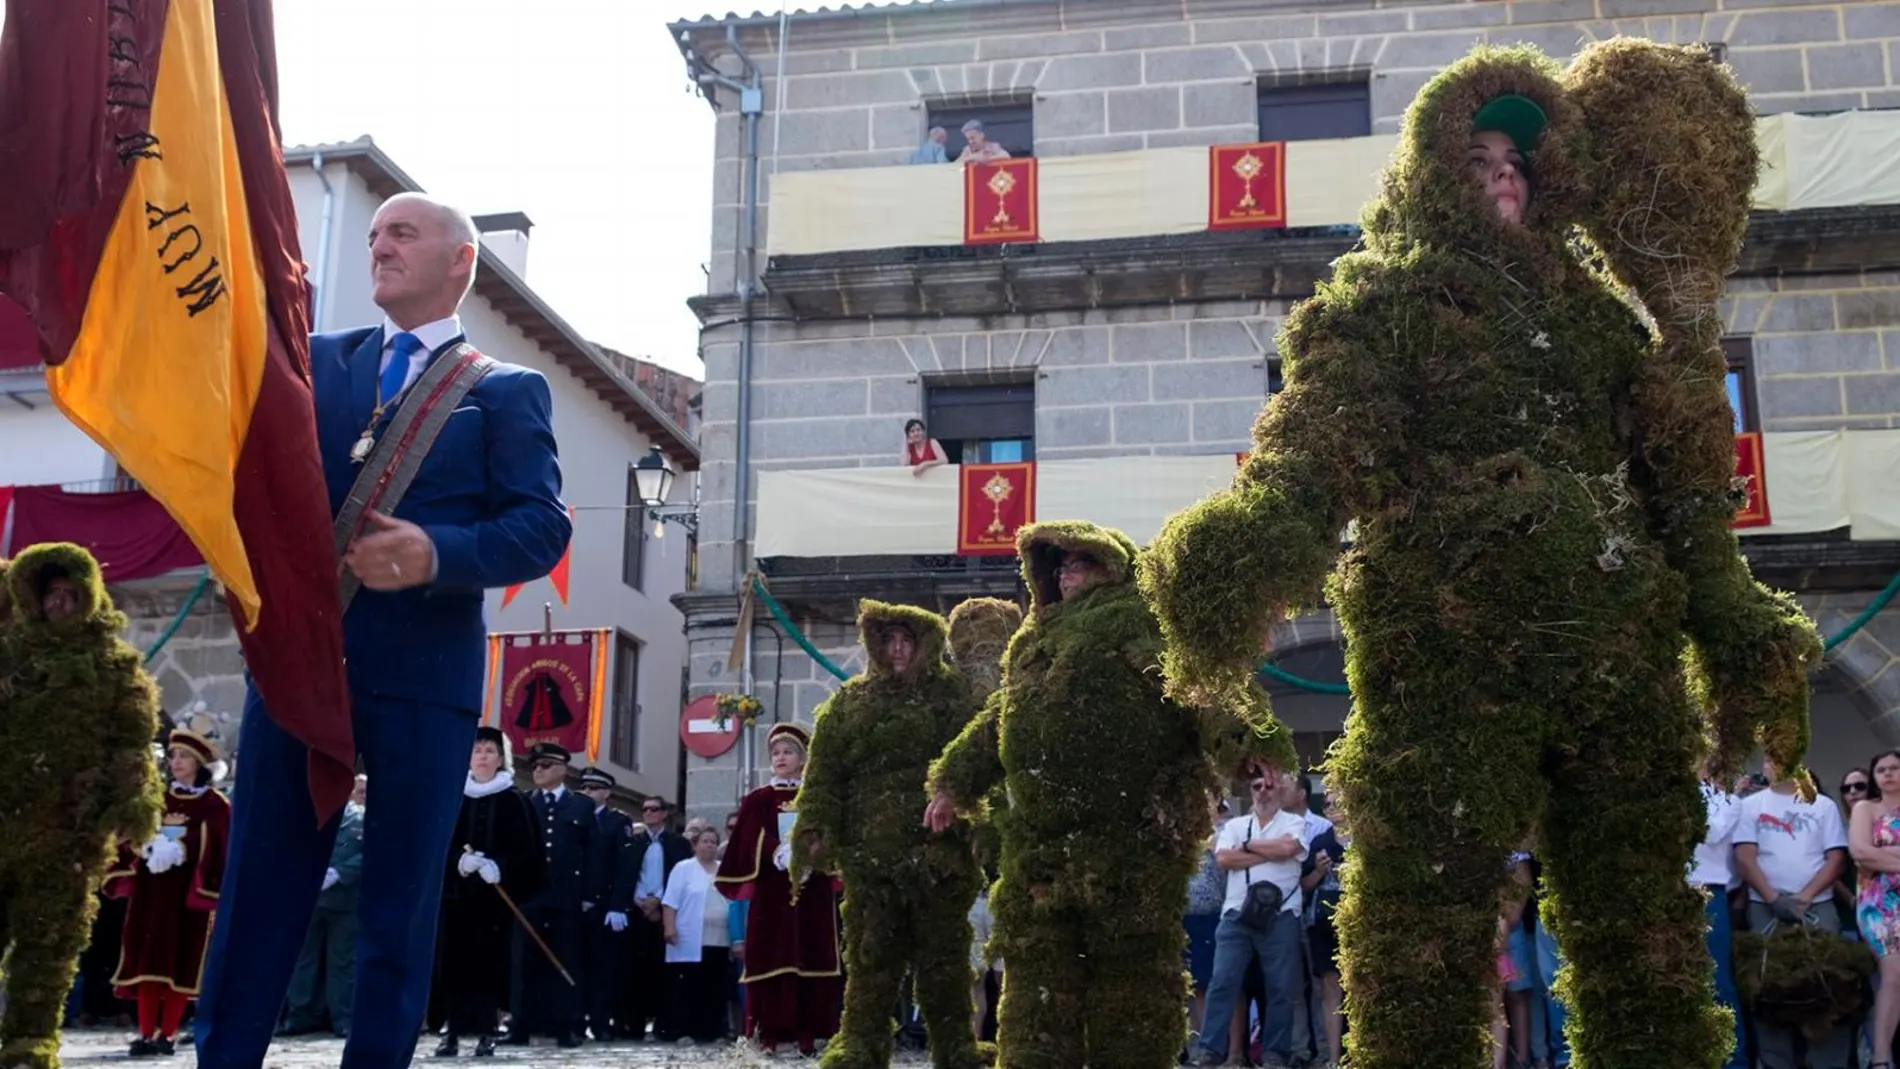 Procesión del Corpus Christi y desfile de los Hombres de Musgo en la localidad salmantina de Béjar, declarado este año Fiesta de Interés Turístico Internacional